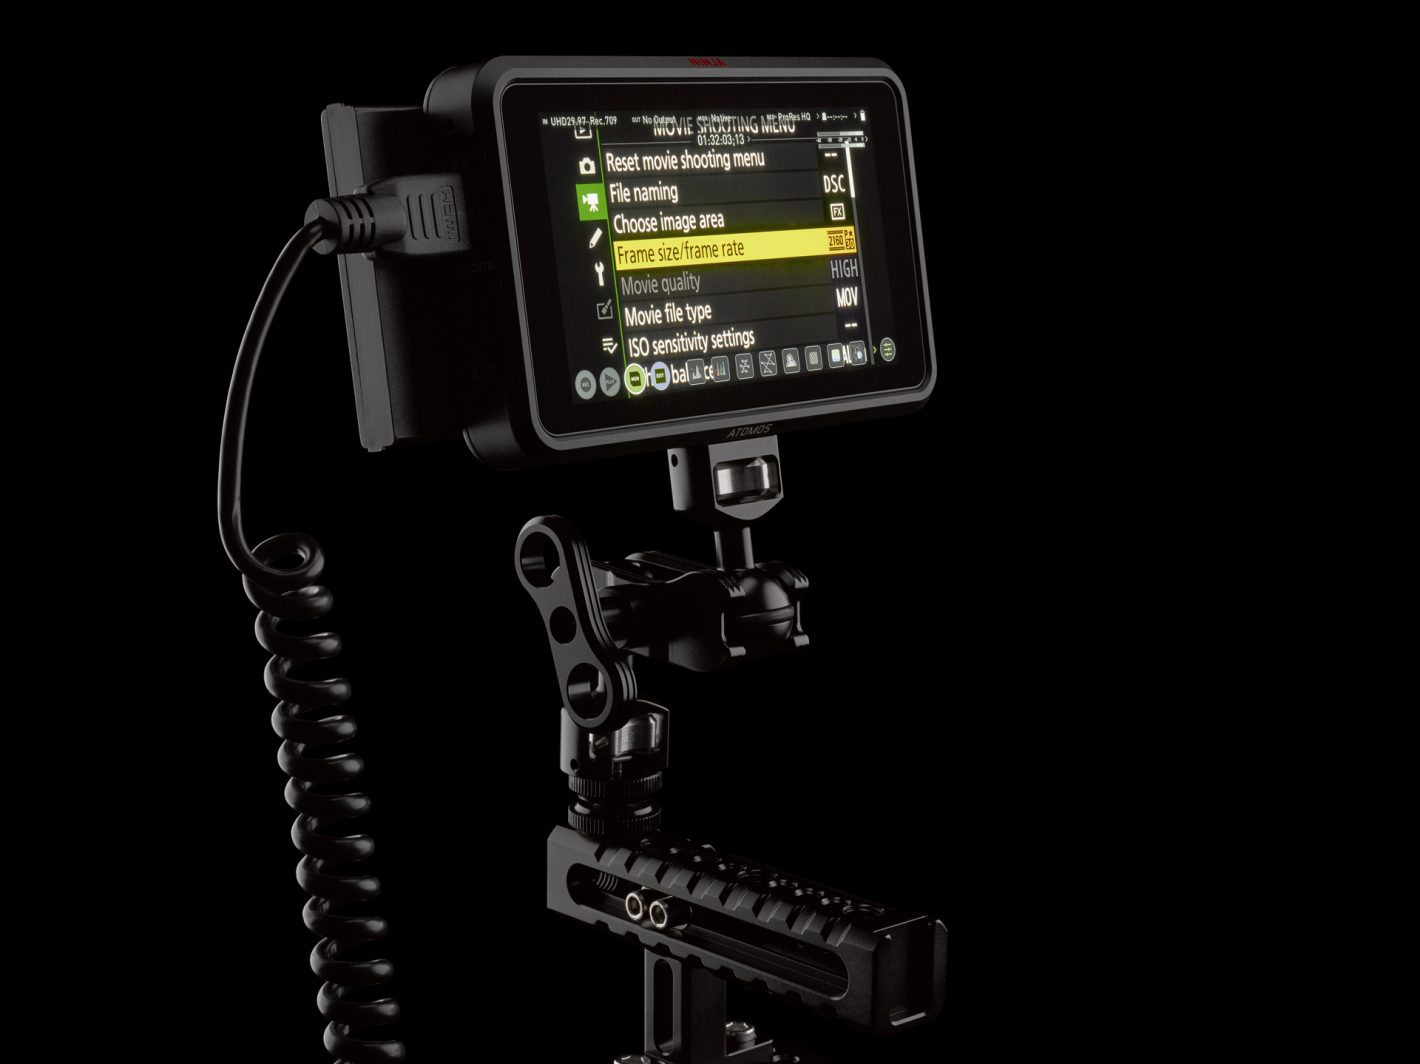 Découvrez le nouveau kit Nikon Z6 conçu pour les cinéastes et vidéastes